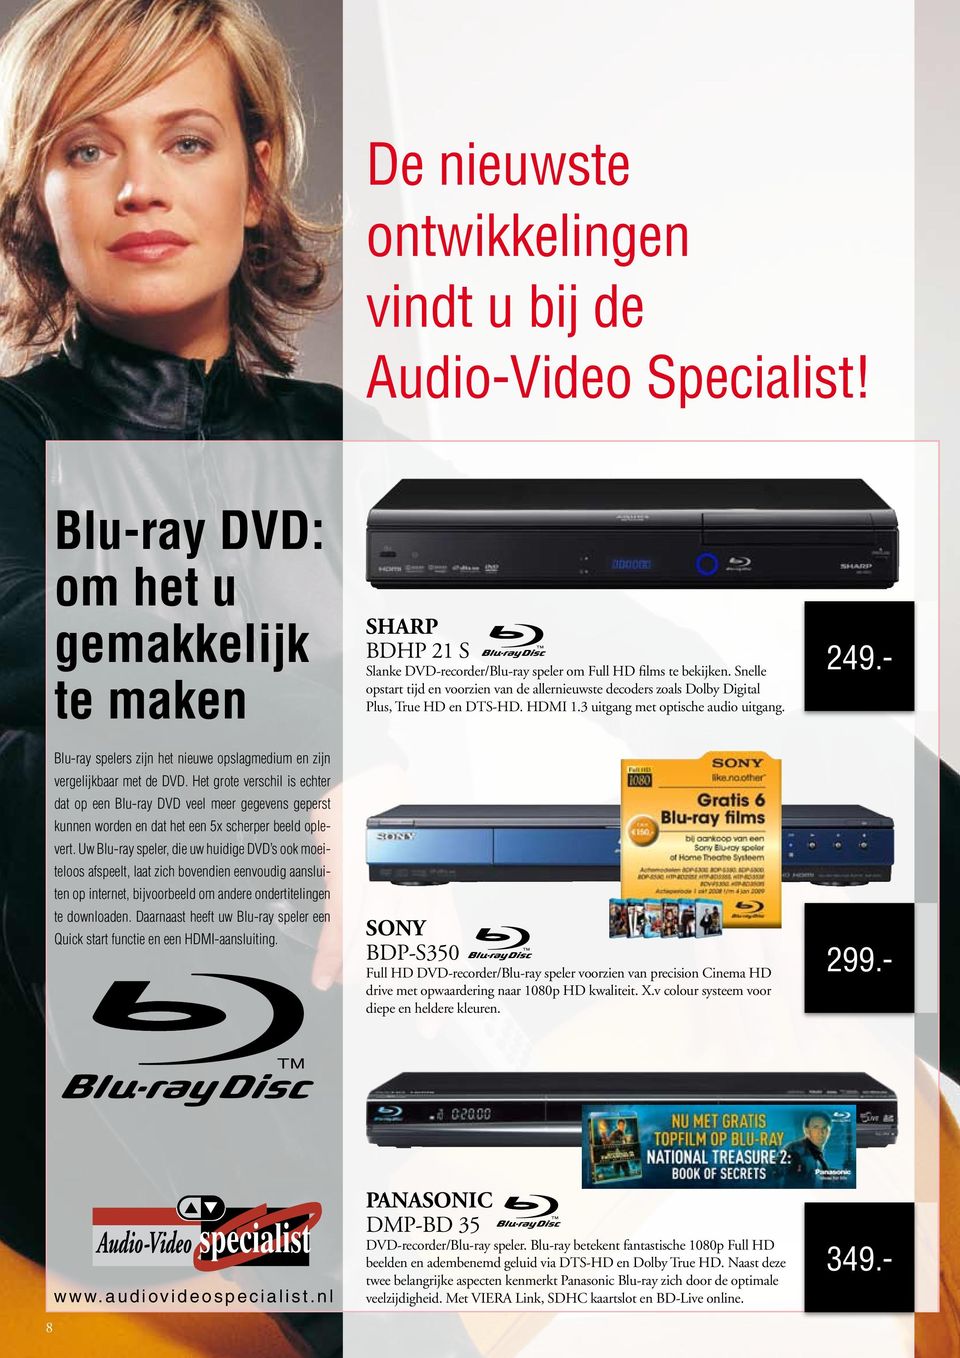 Blu-ray spelers zijn het nieuwe opslagmedium en zijn vergelijkbaar met de DVD.